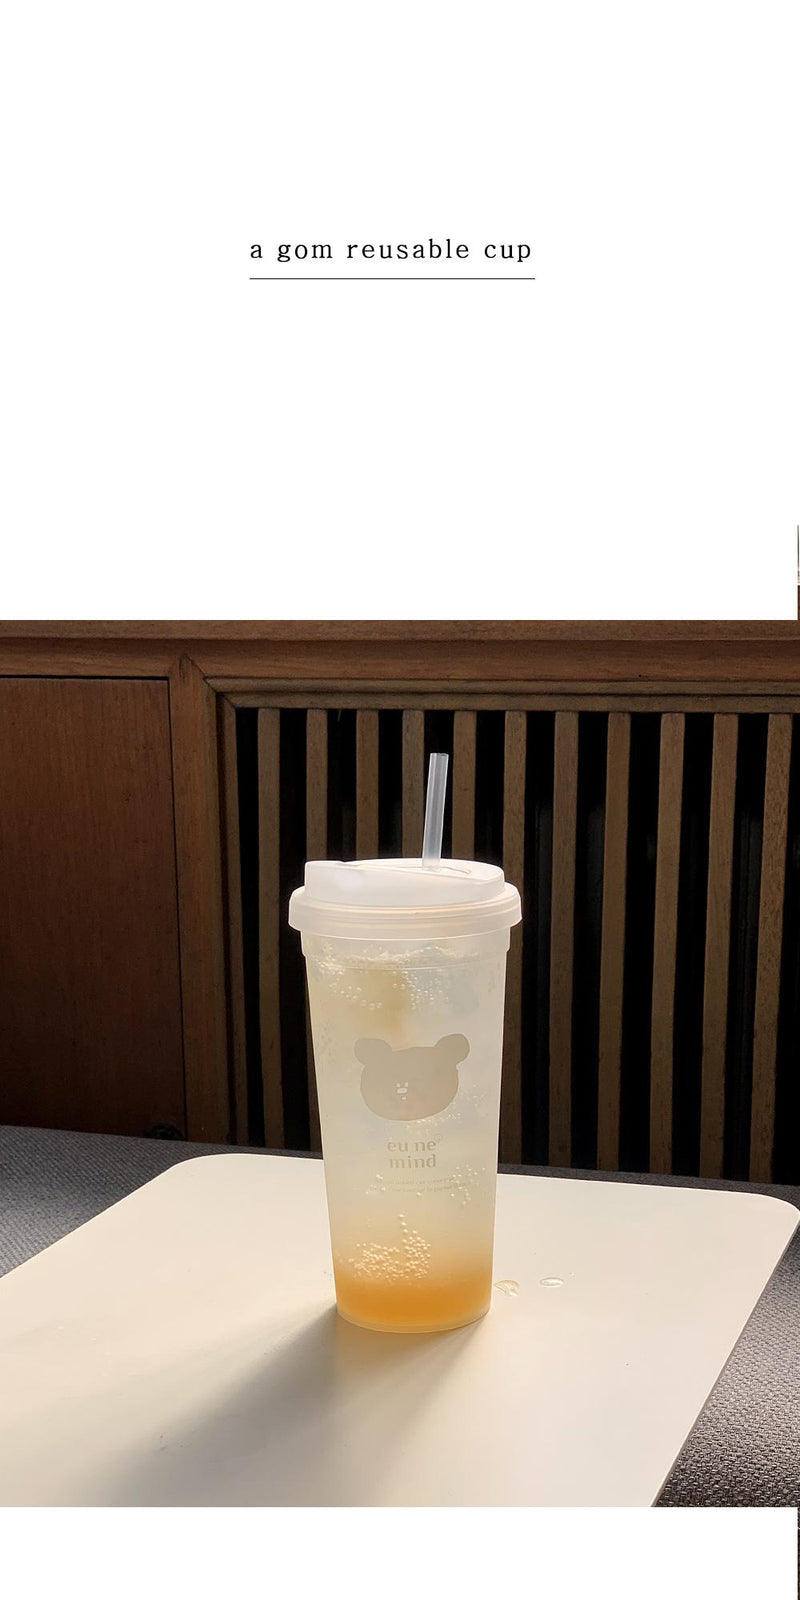 [HODU3"] agom reusable cup